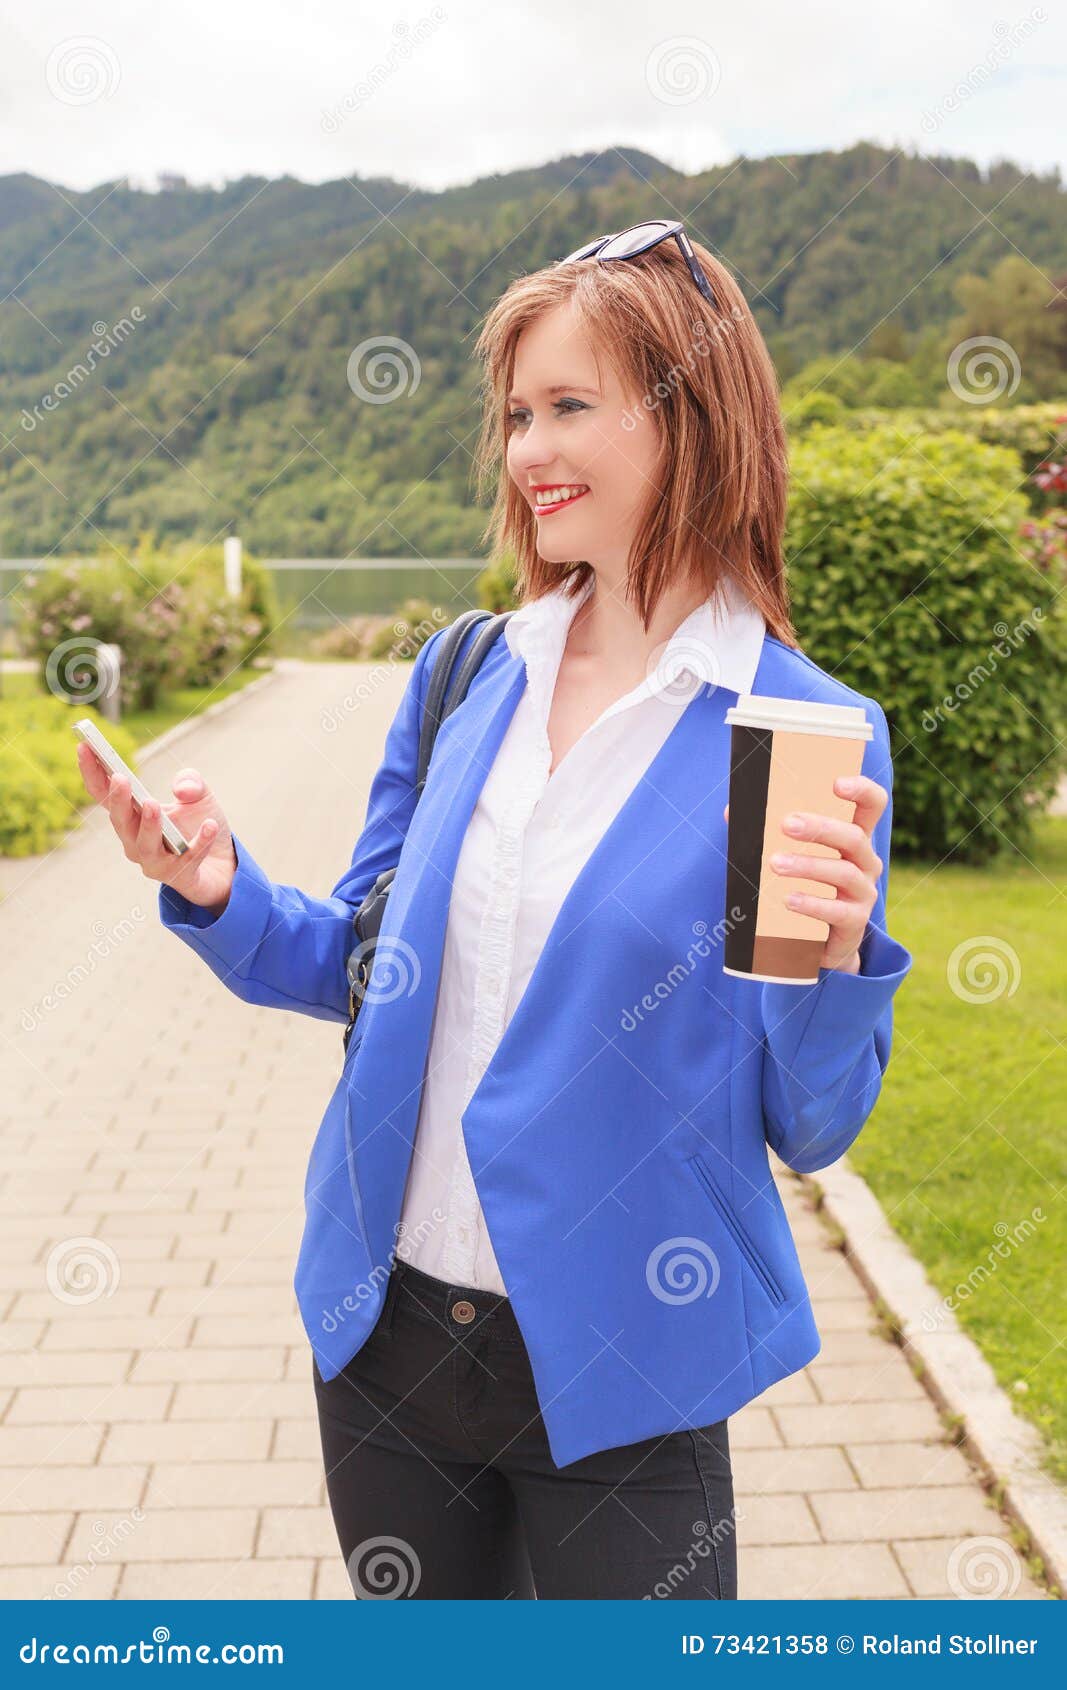 Mobile phone using woman young. Όμορφη νέα γυναίκα με το κινητό τηλέφωνο Ελαφριά φωτεινή ρύθμιση Ο πολυάσχολος σπουδαστής κοριτσιών στην κίνηση με το ποτό κοιλαίνει υπό εξέταση